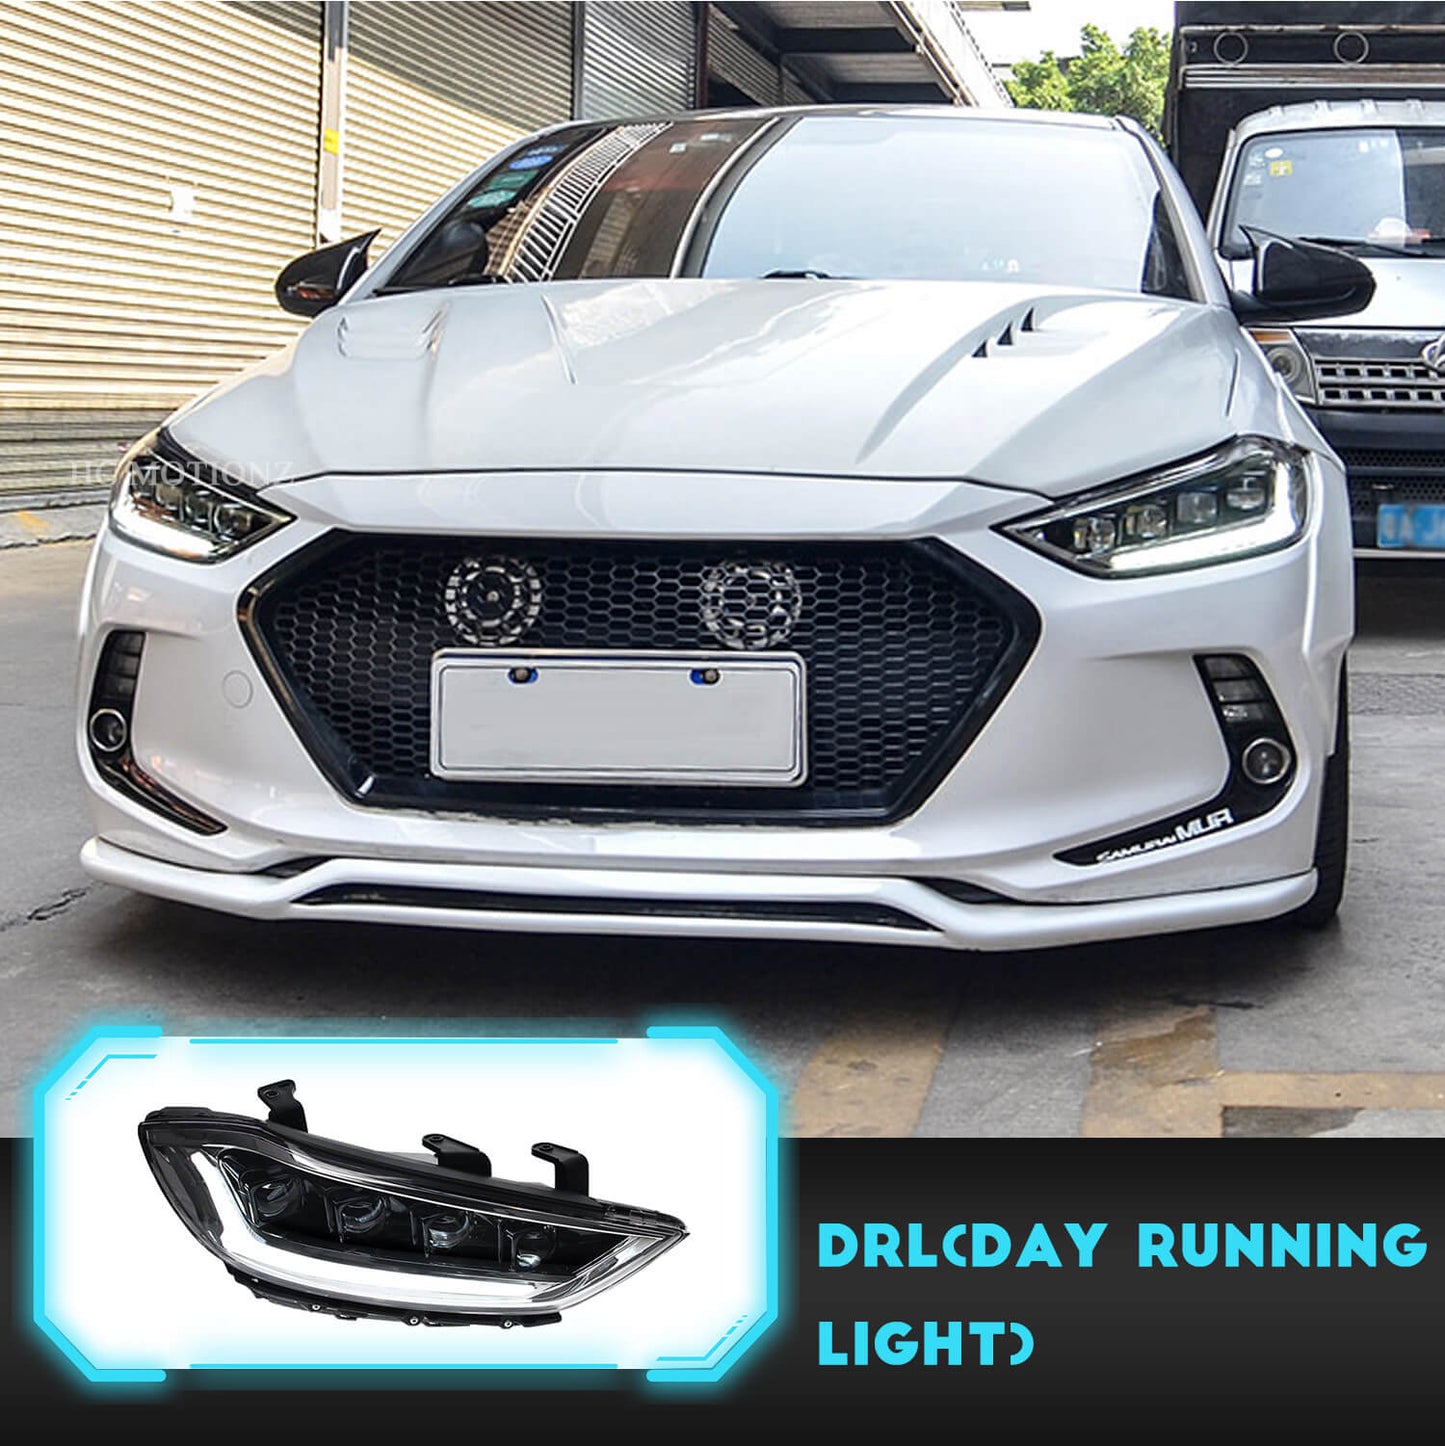 HCMOTION For Hyundai Elantra 2016-2018 Full LED Headlights